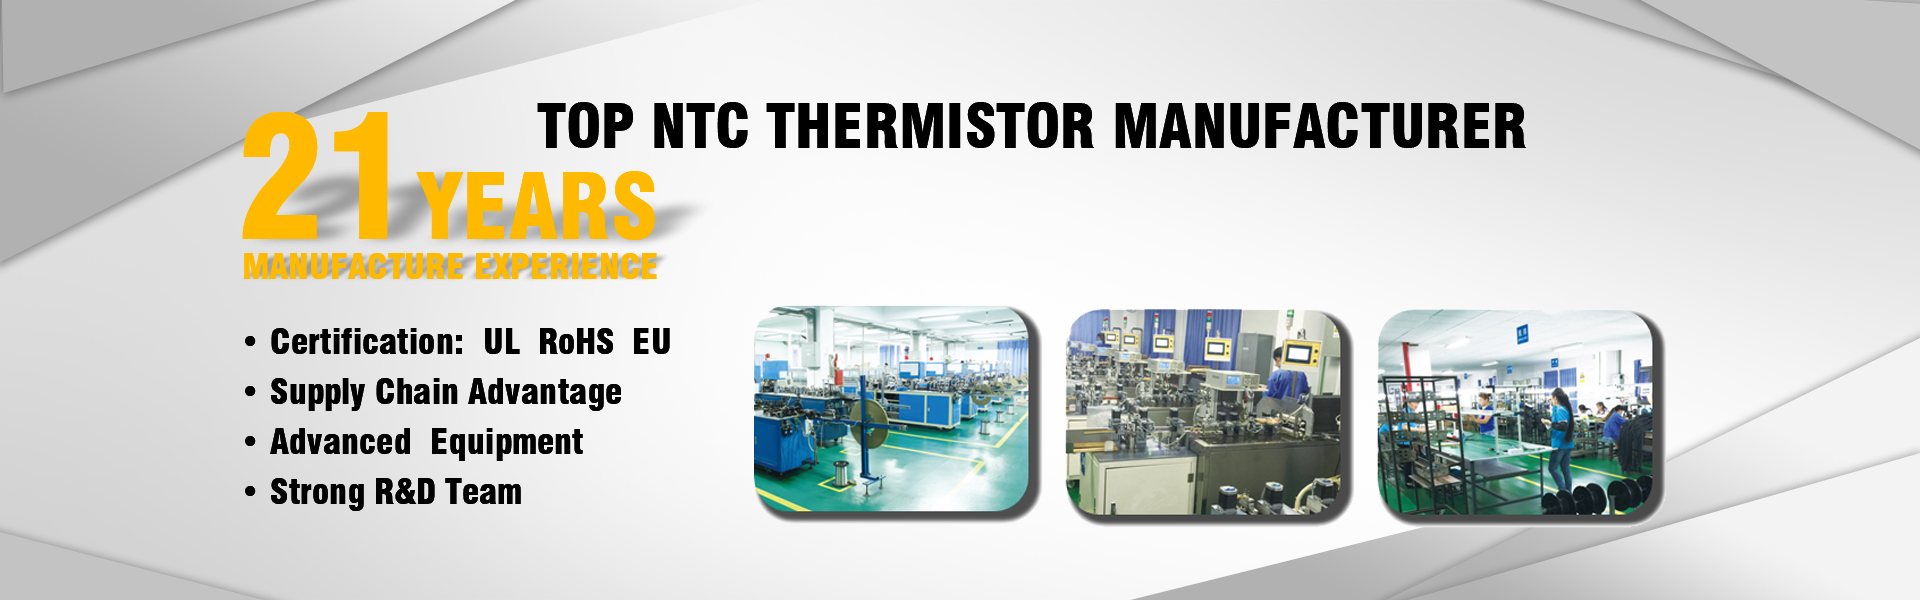 NTC 서미스터 제조업체, 온도 센서, 높은 정밀도,GUANGDONG XINSHIHENG TECHNOLOGY CO.,LTD